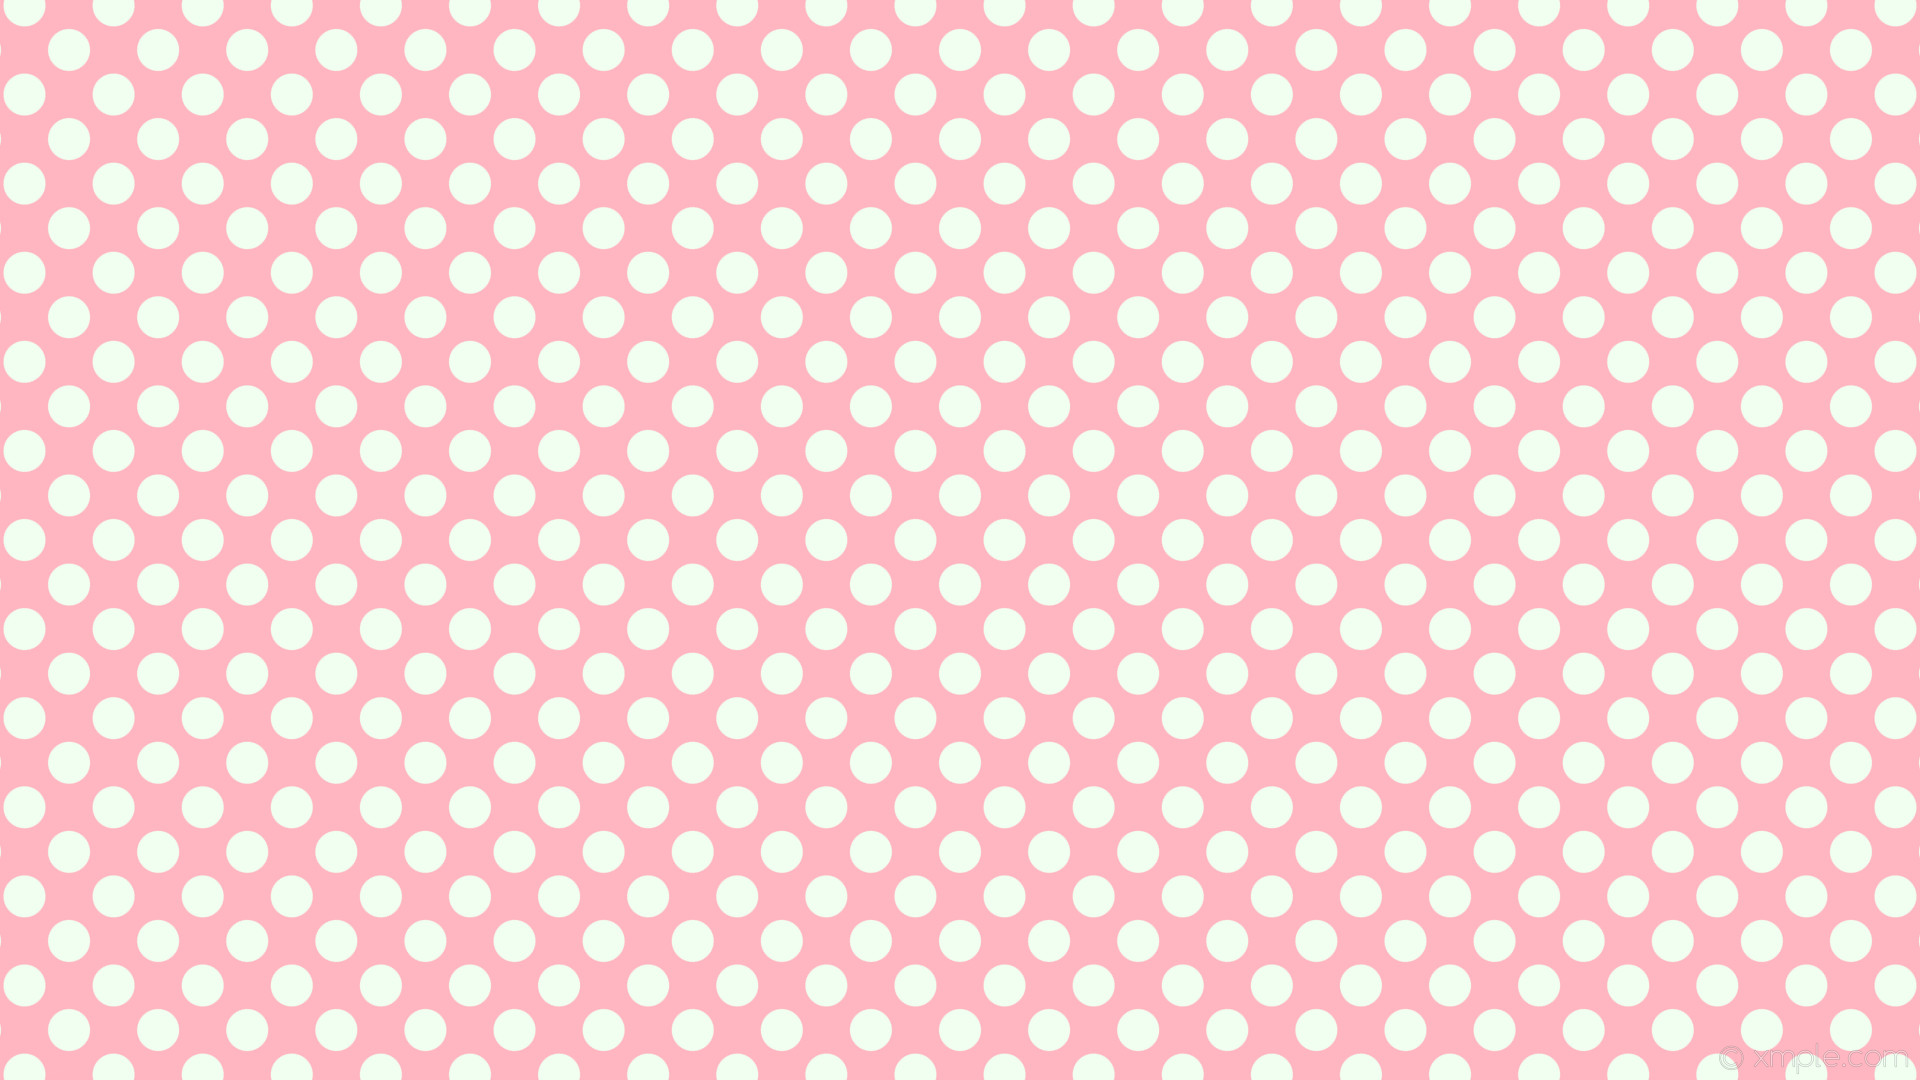 1920x1080 wallpaper dots pink white spots polka light pink honeydew #ffb6c1 #f0fff0  225Â° 42px